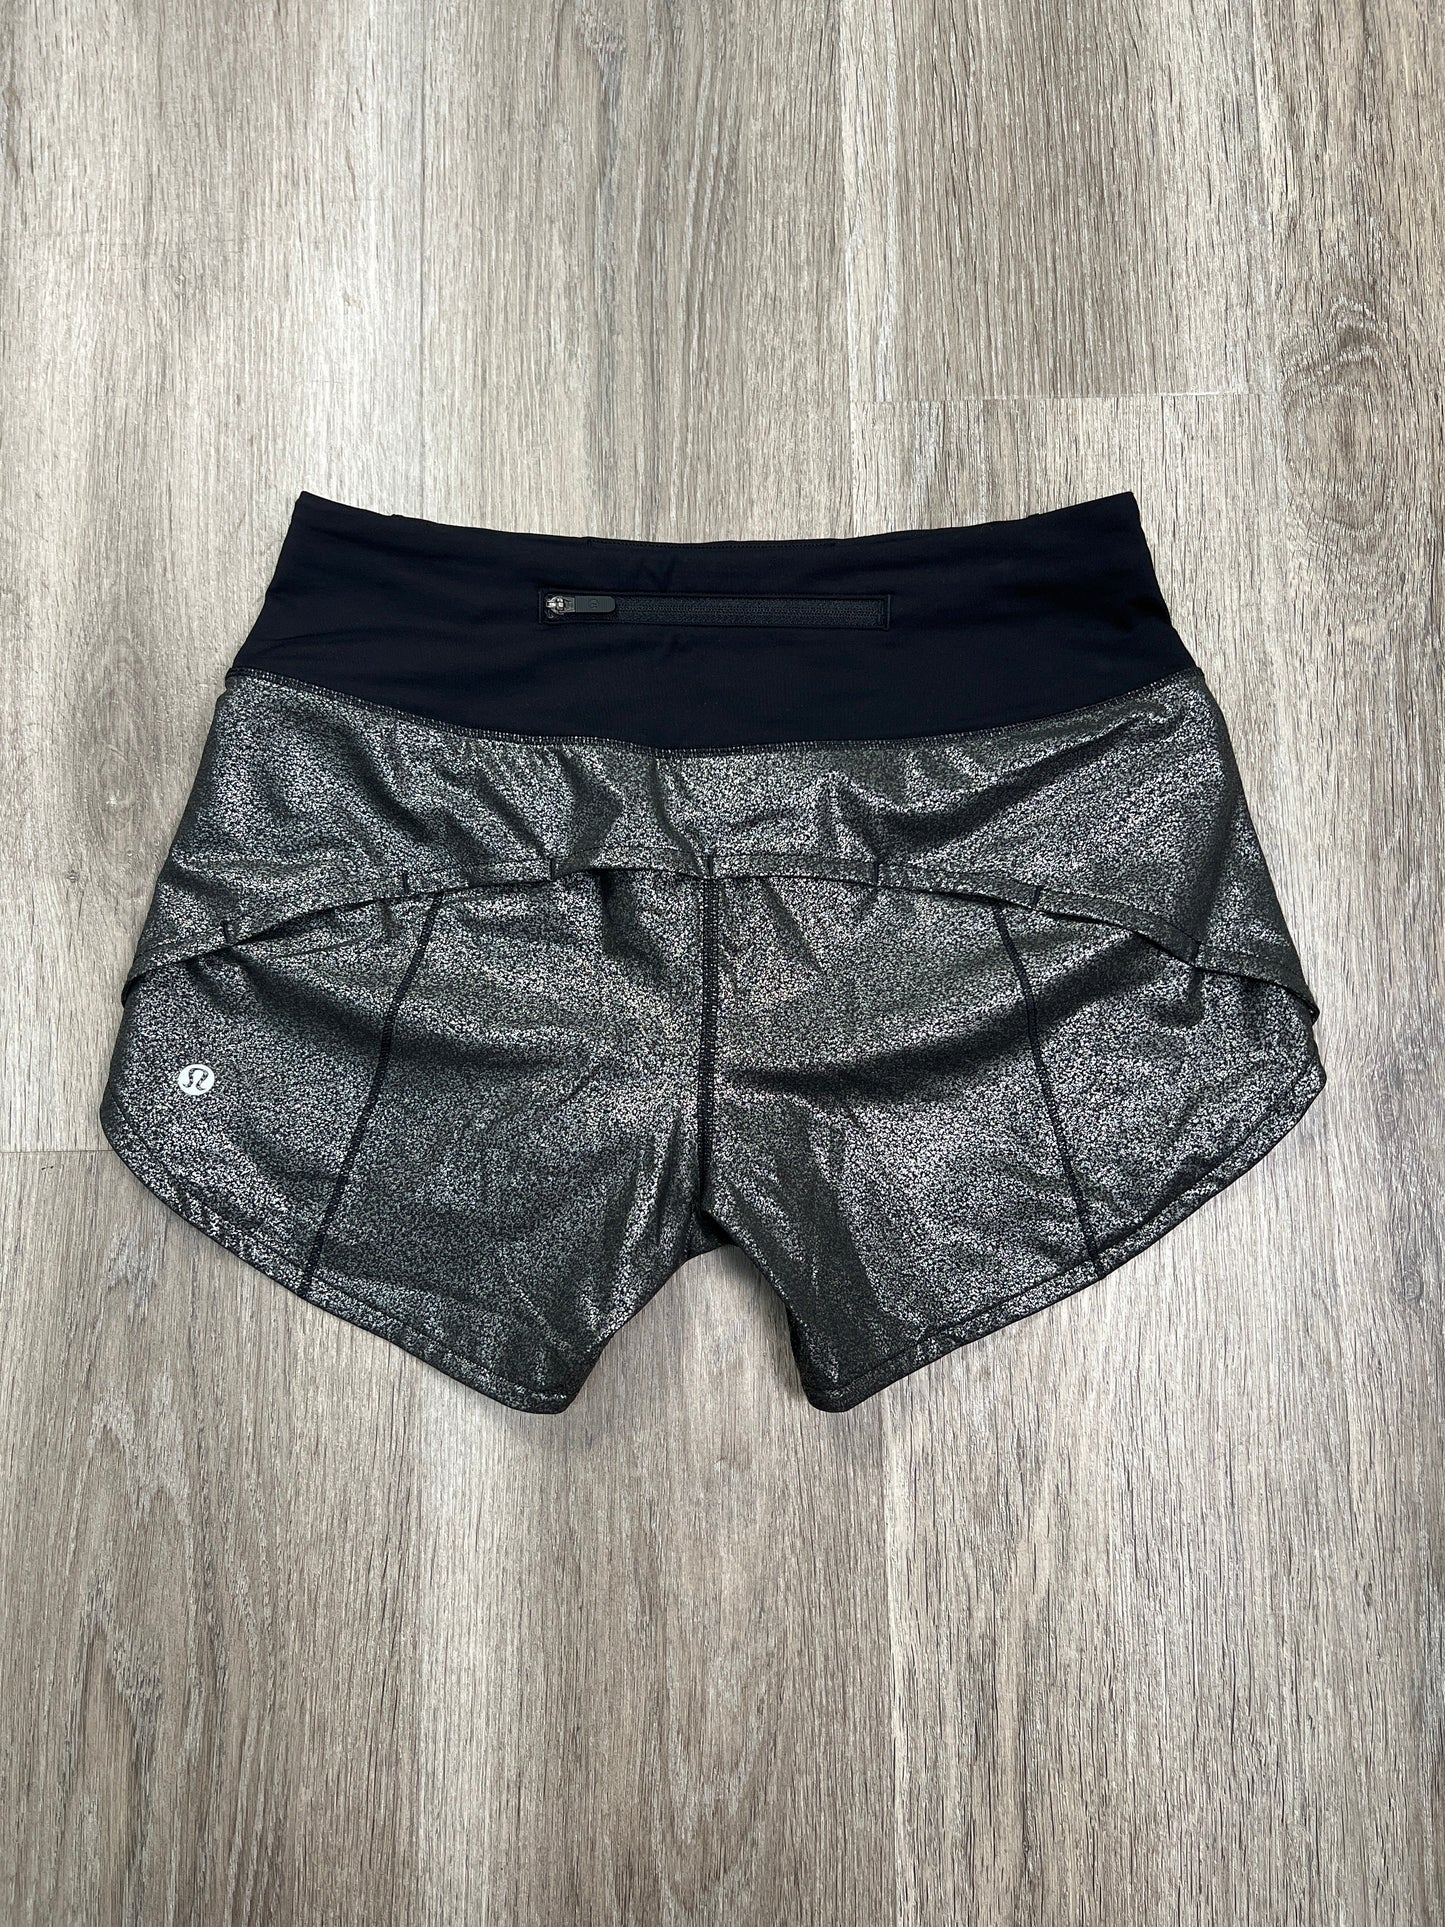 Silver Athletic Shorts Lululemon, Size S